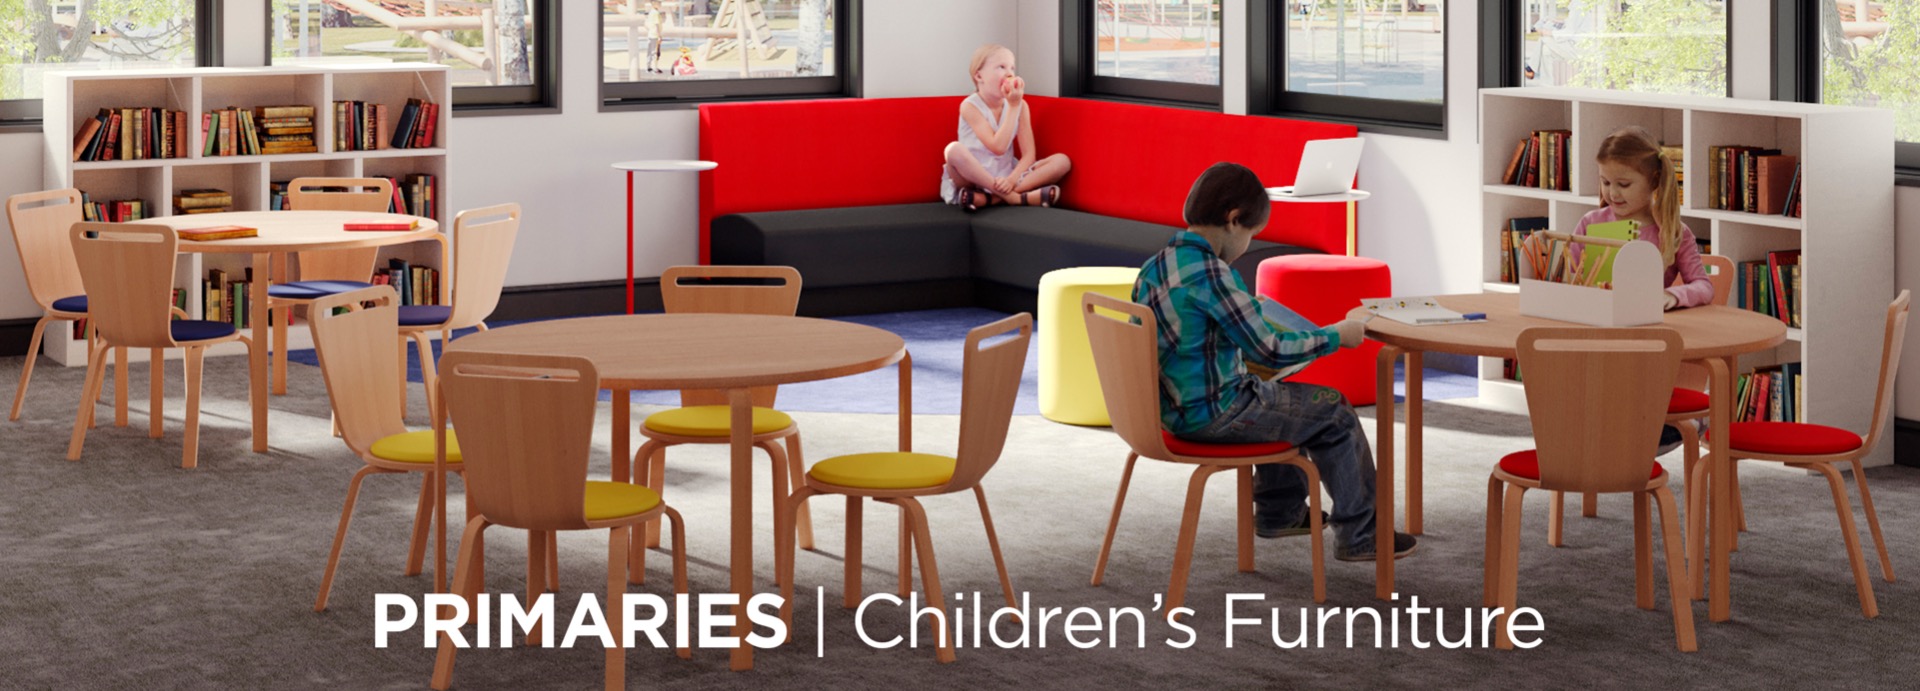 Primaries Children's Furniture